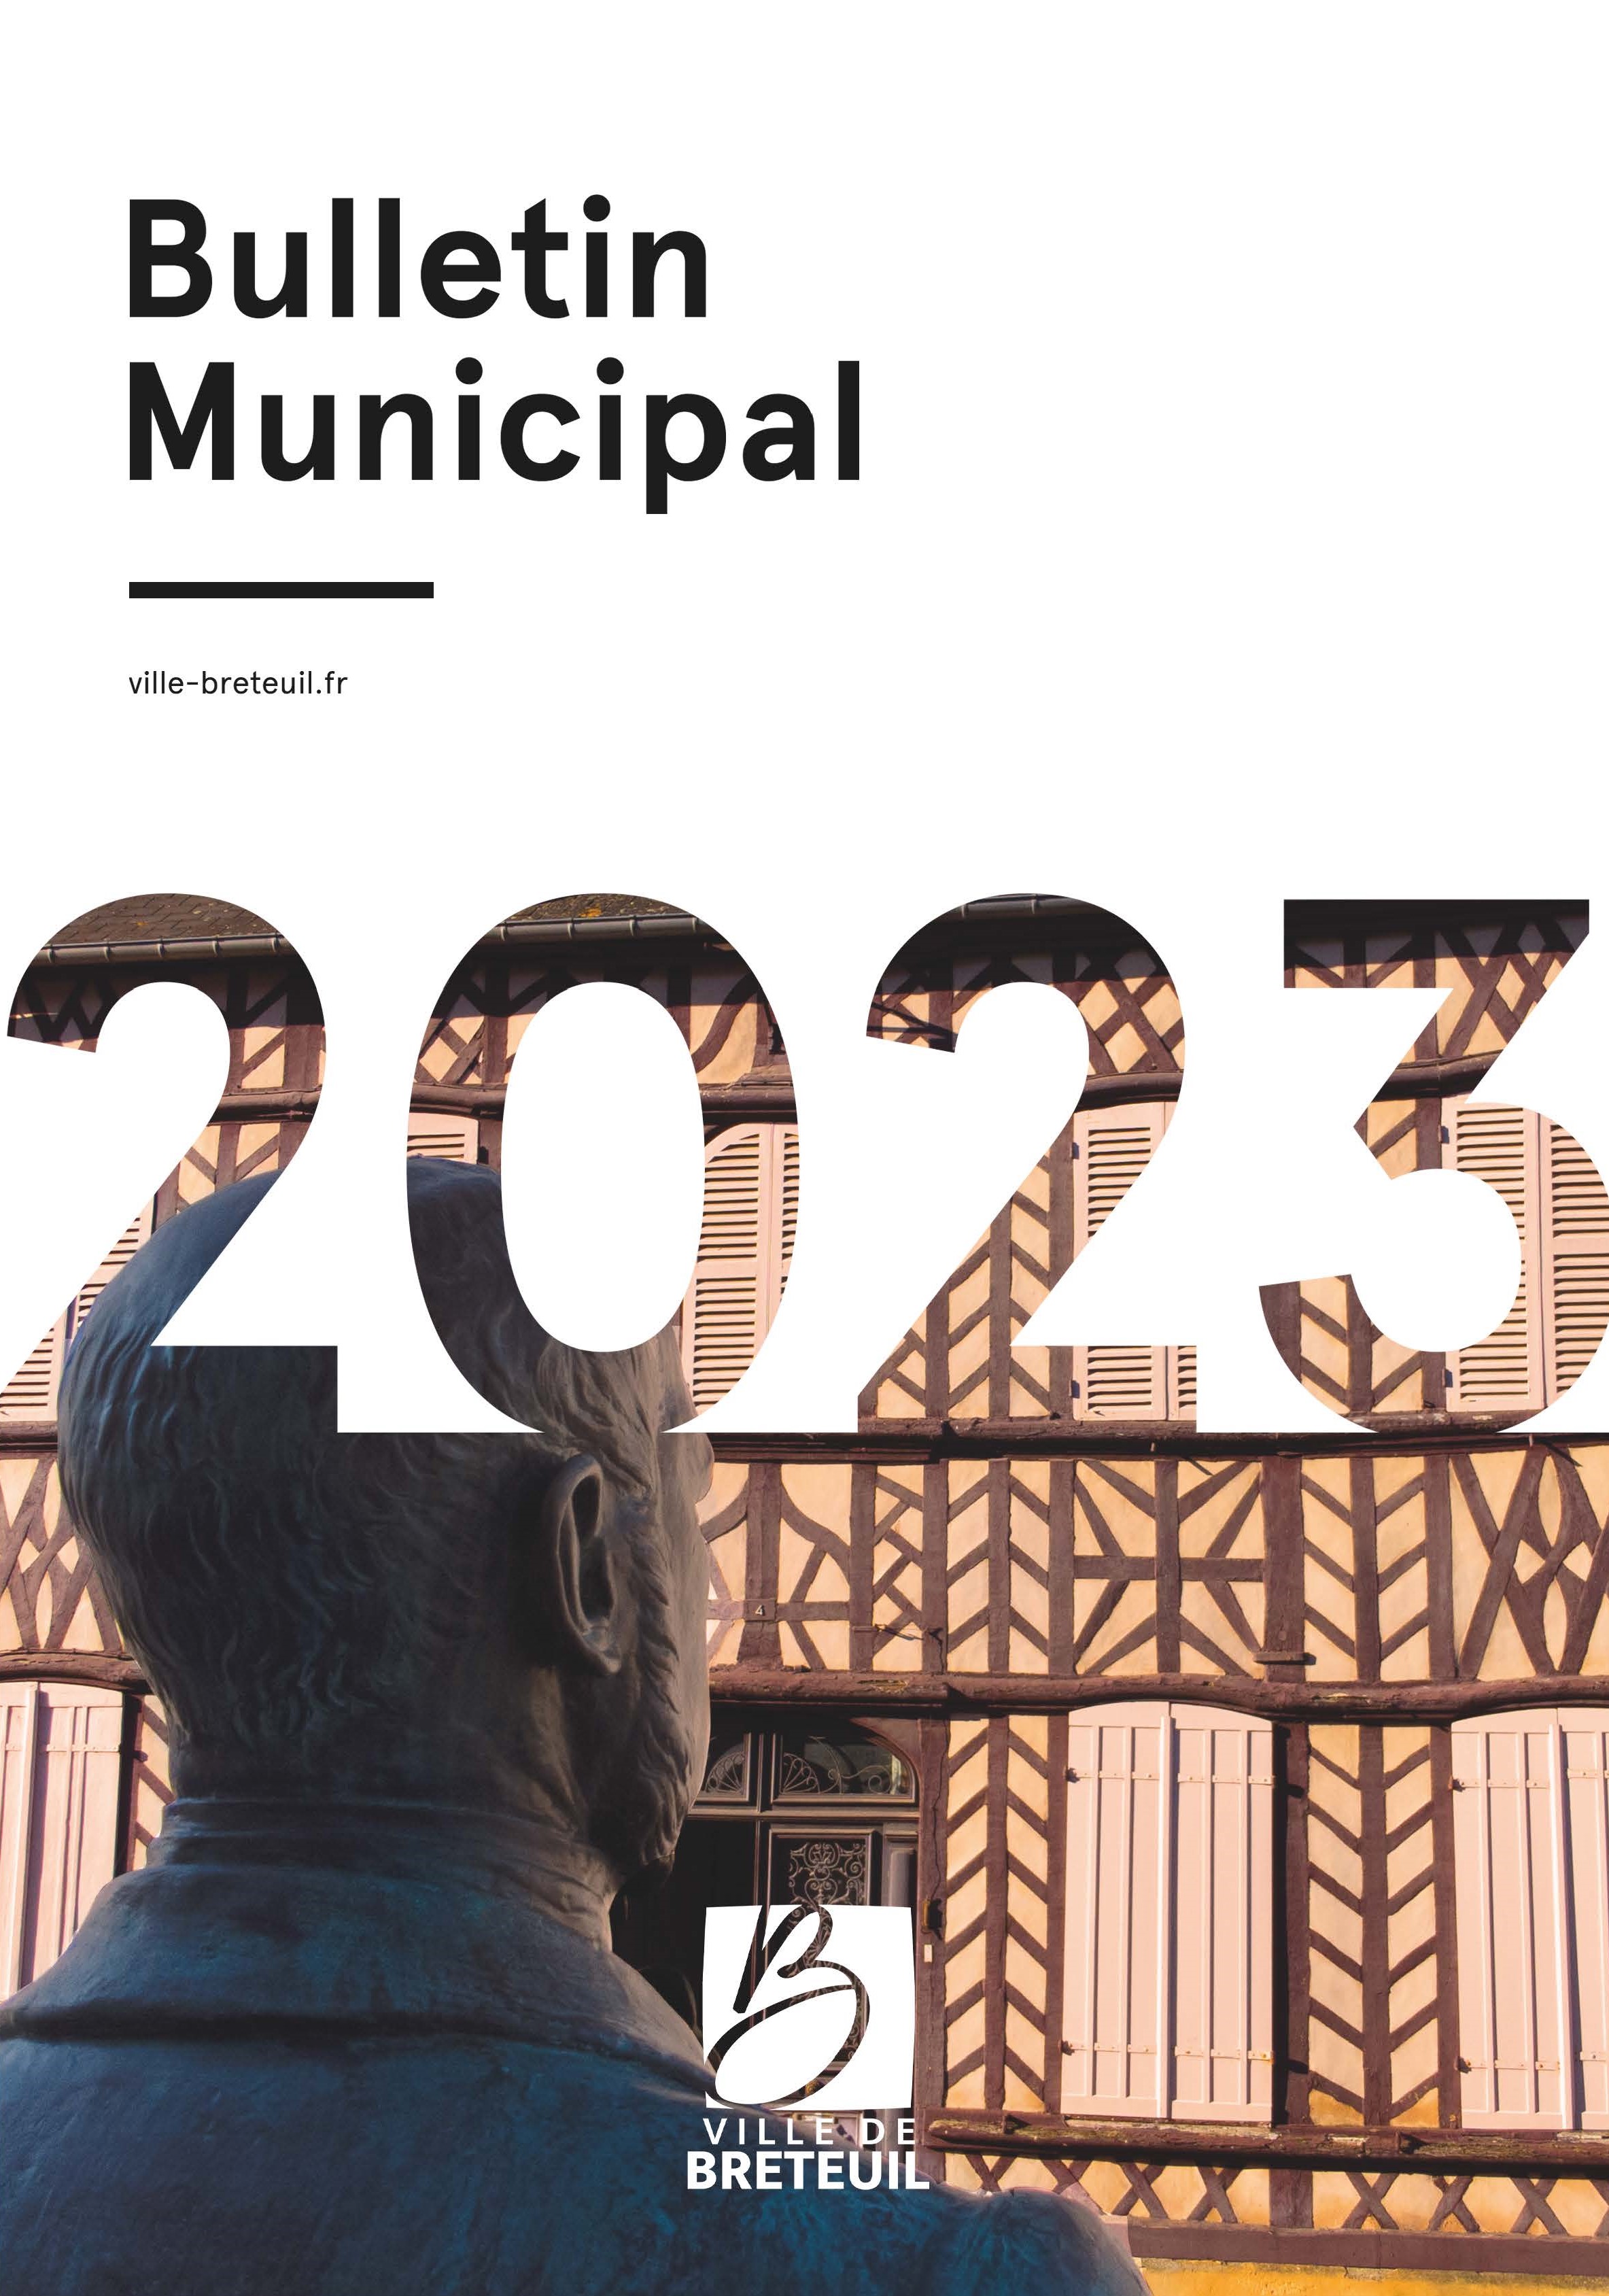 Bulletin municipal 2023